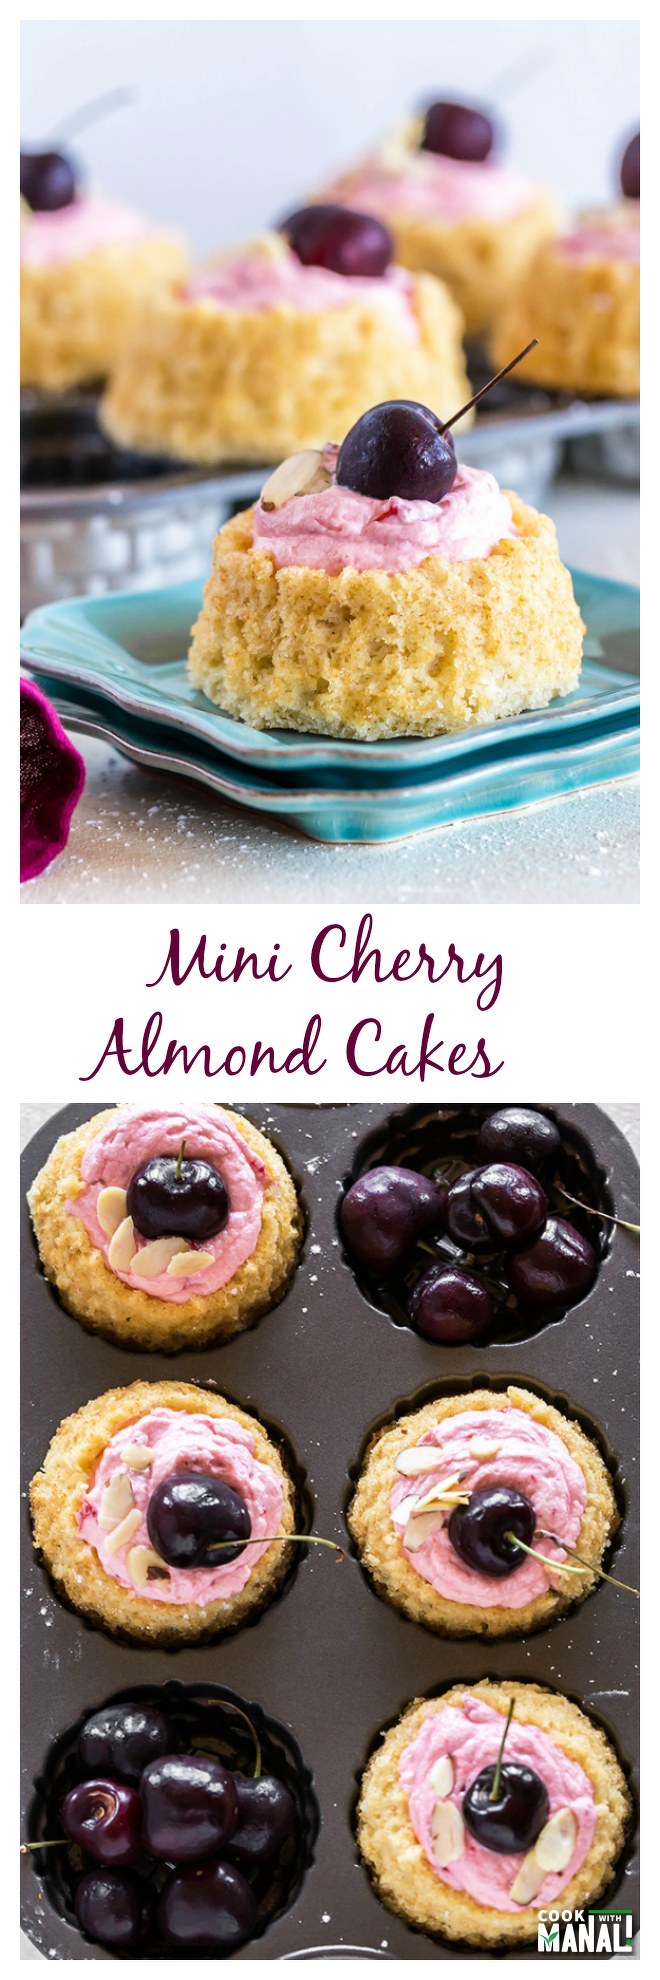 Mini Cherry Almond Cakes Collage